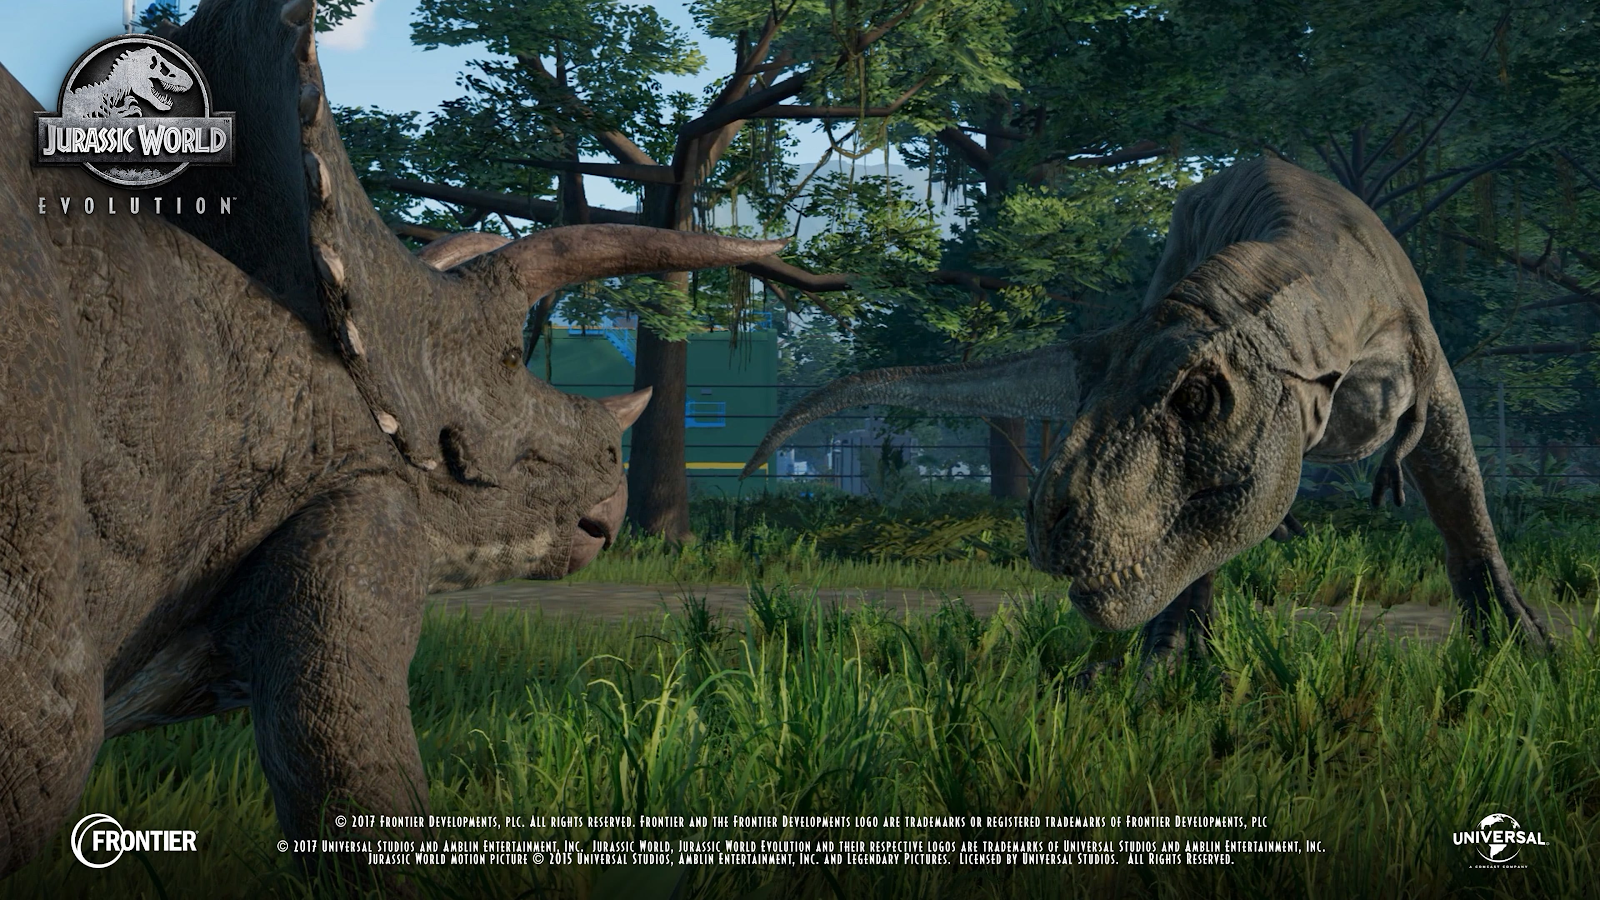 Tải ngay tựa game kinh điển: Jurassic World Evolution trị giá 42.99$ đang được miễn phí